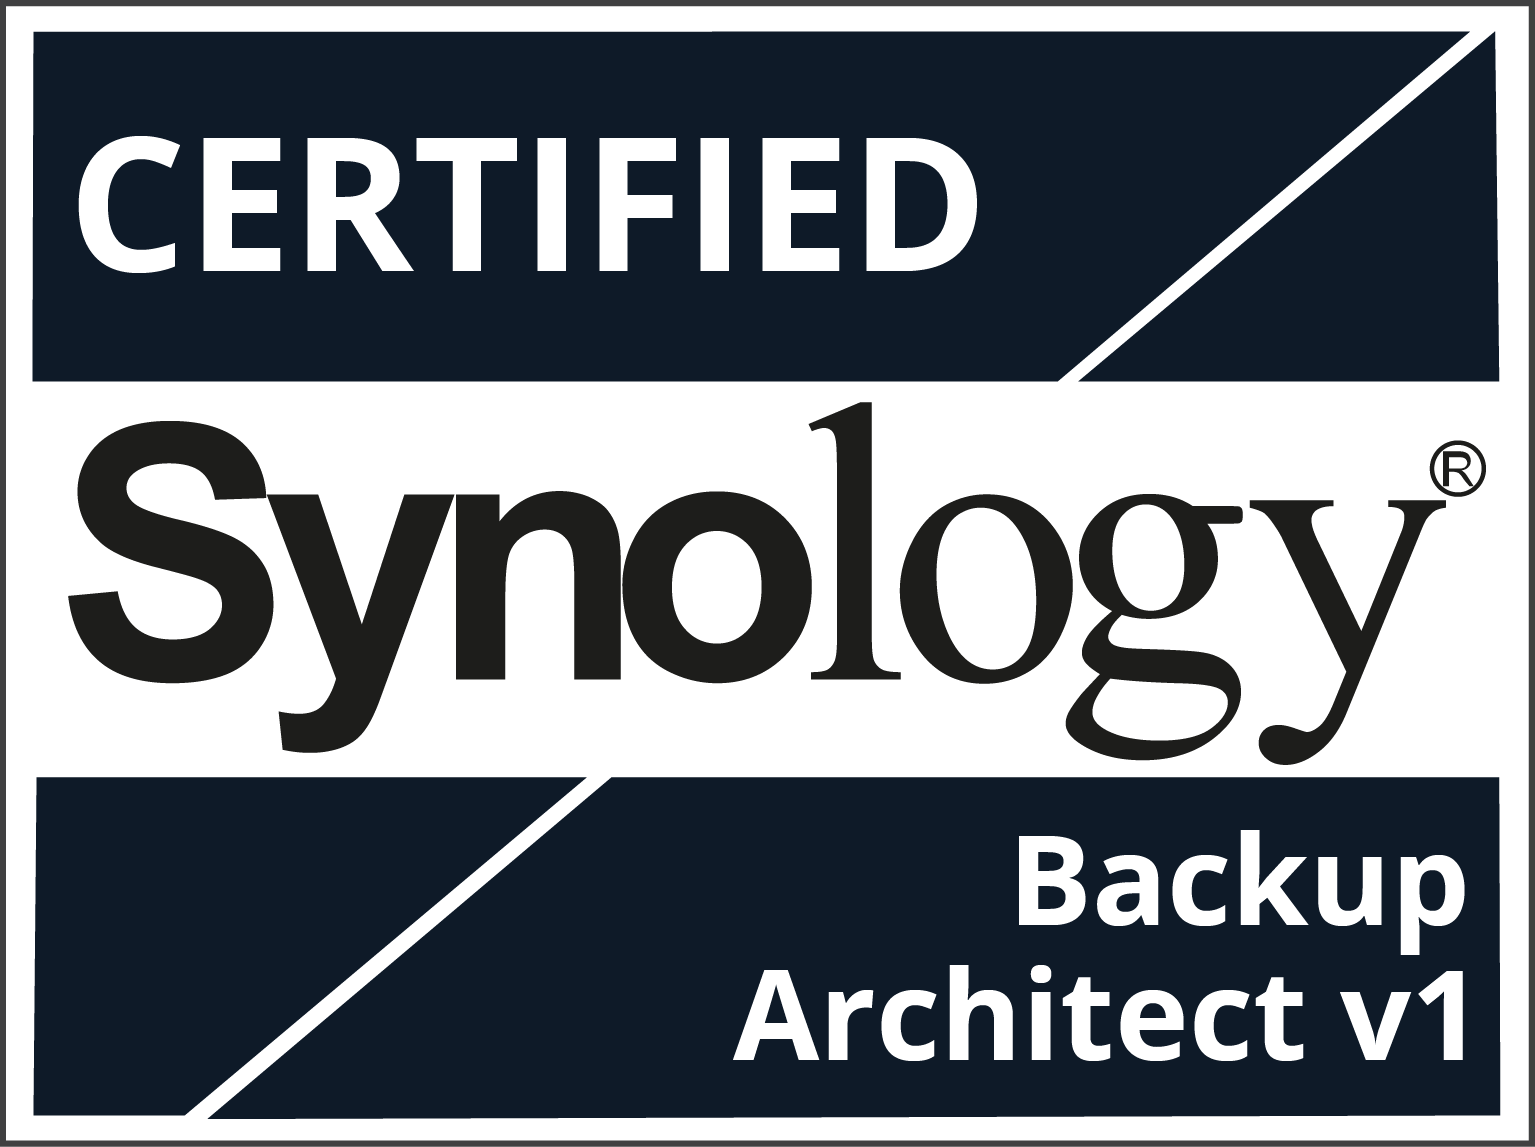 Certified Synology Backup Architect v1